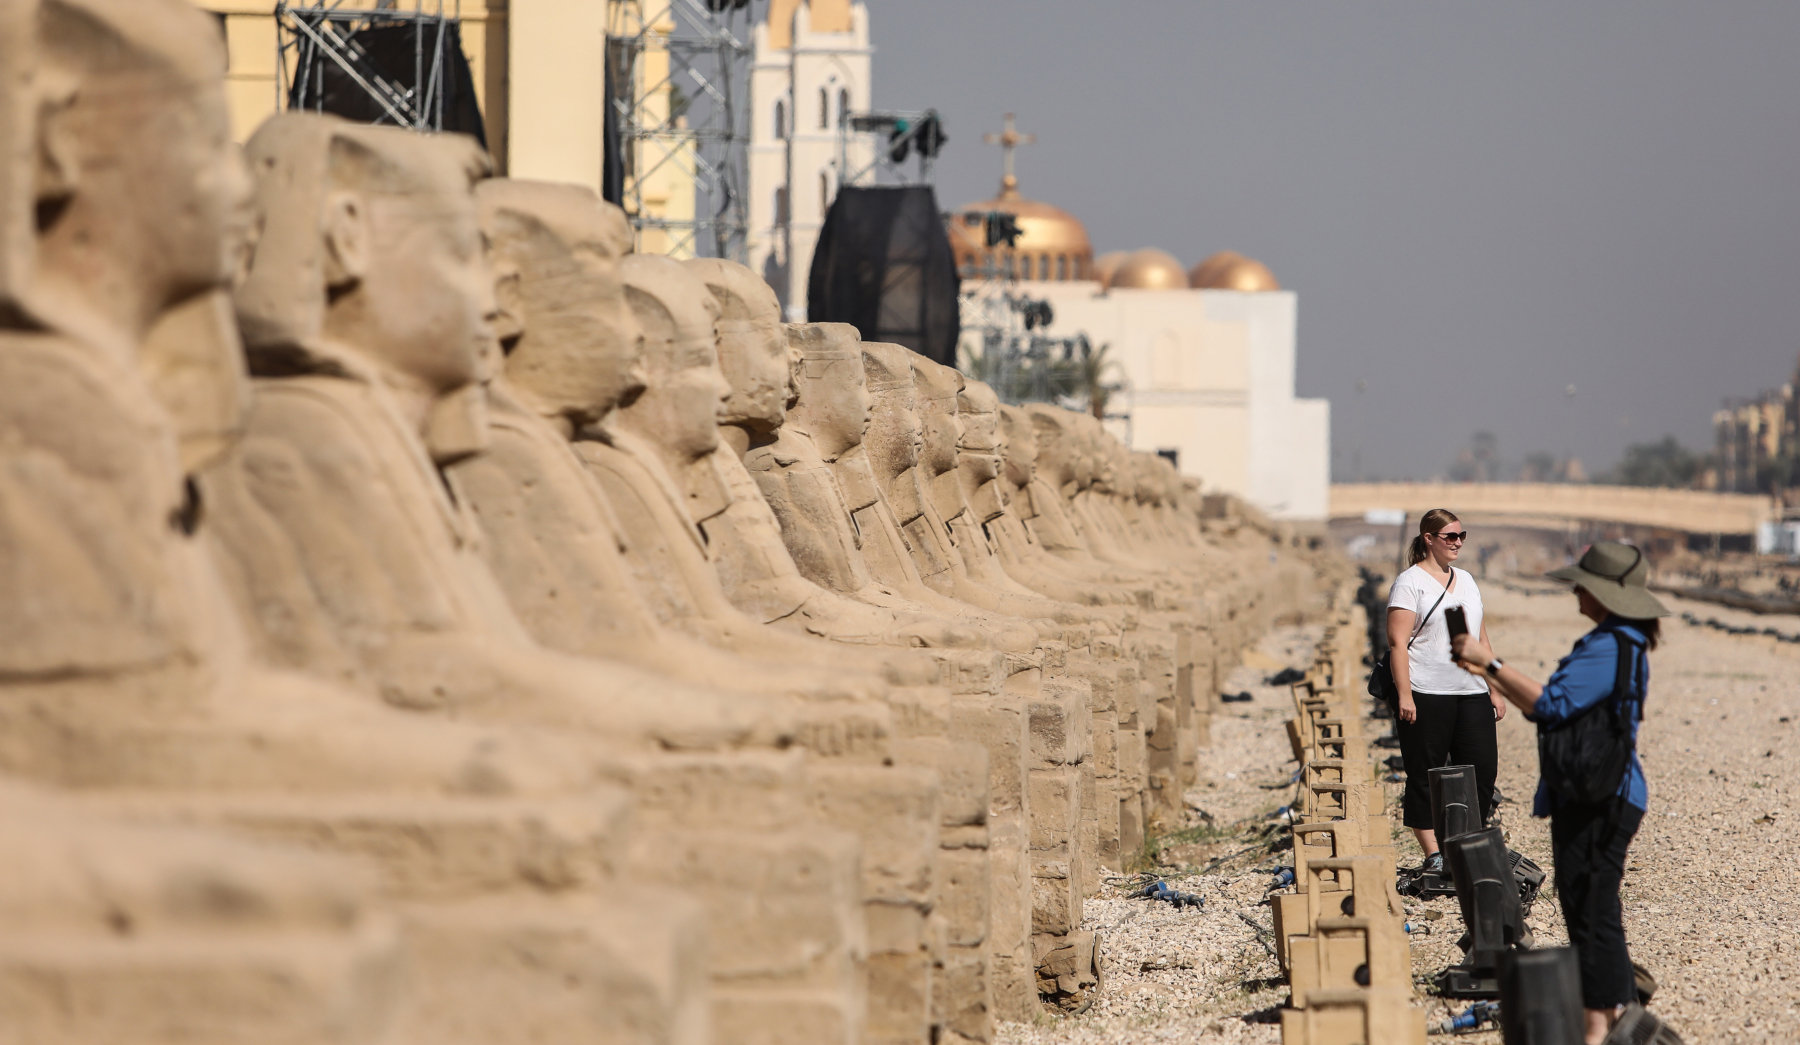 Λεωφόρος των Σφιγγών: Εγκαινιάστηκε το μεγαλύτερο ανοιχτό μουσείο στον κόσμο – Βρίσκεται στην Αίγυπτο